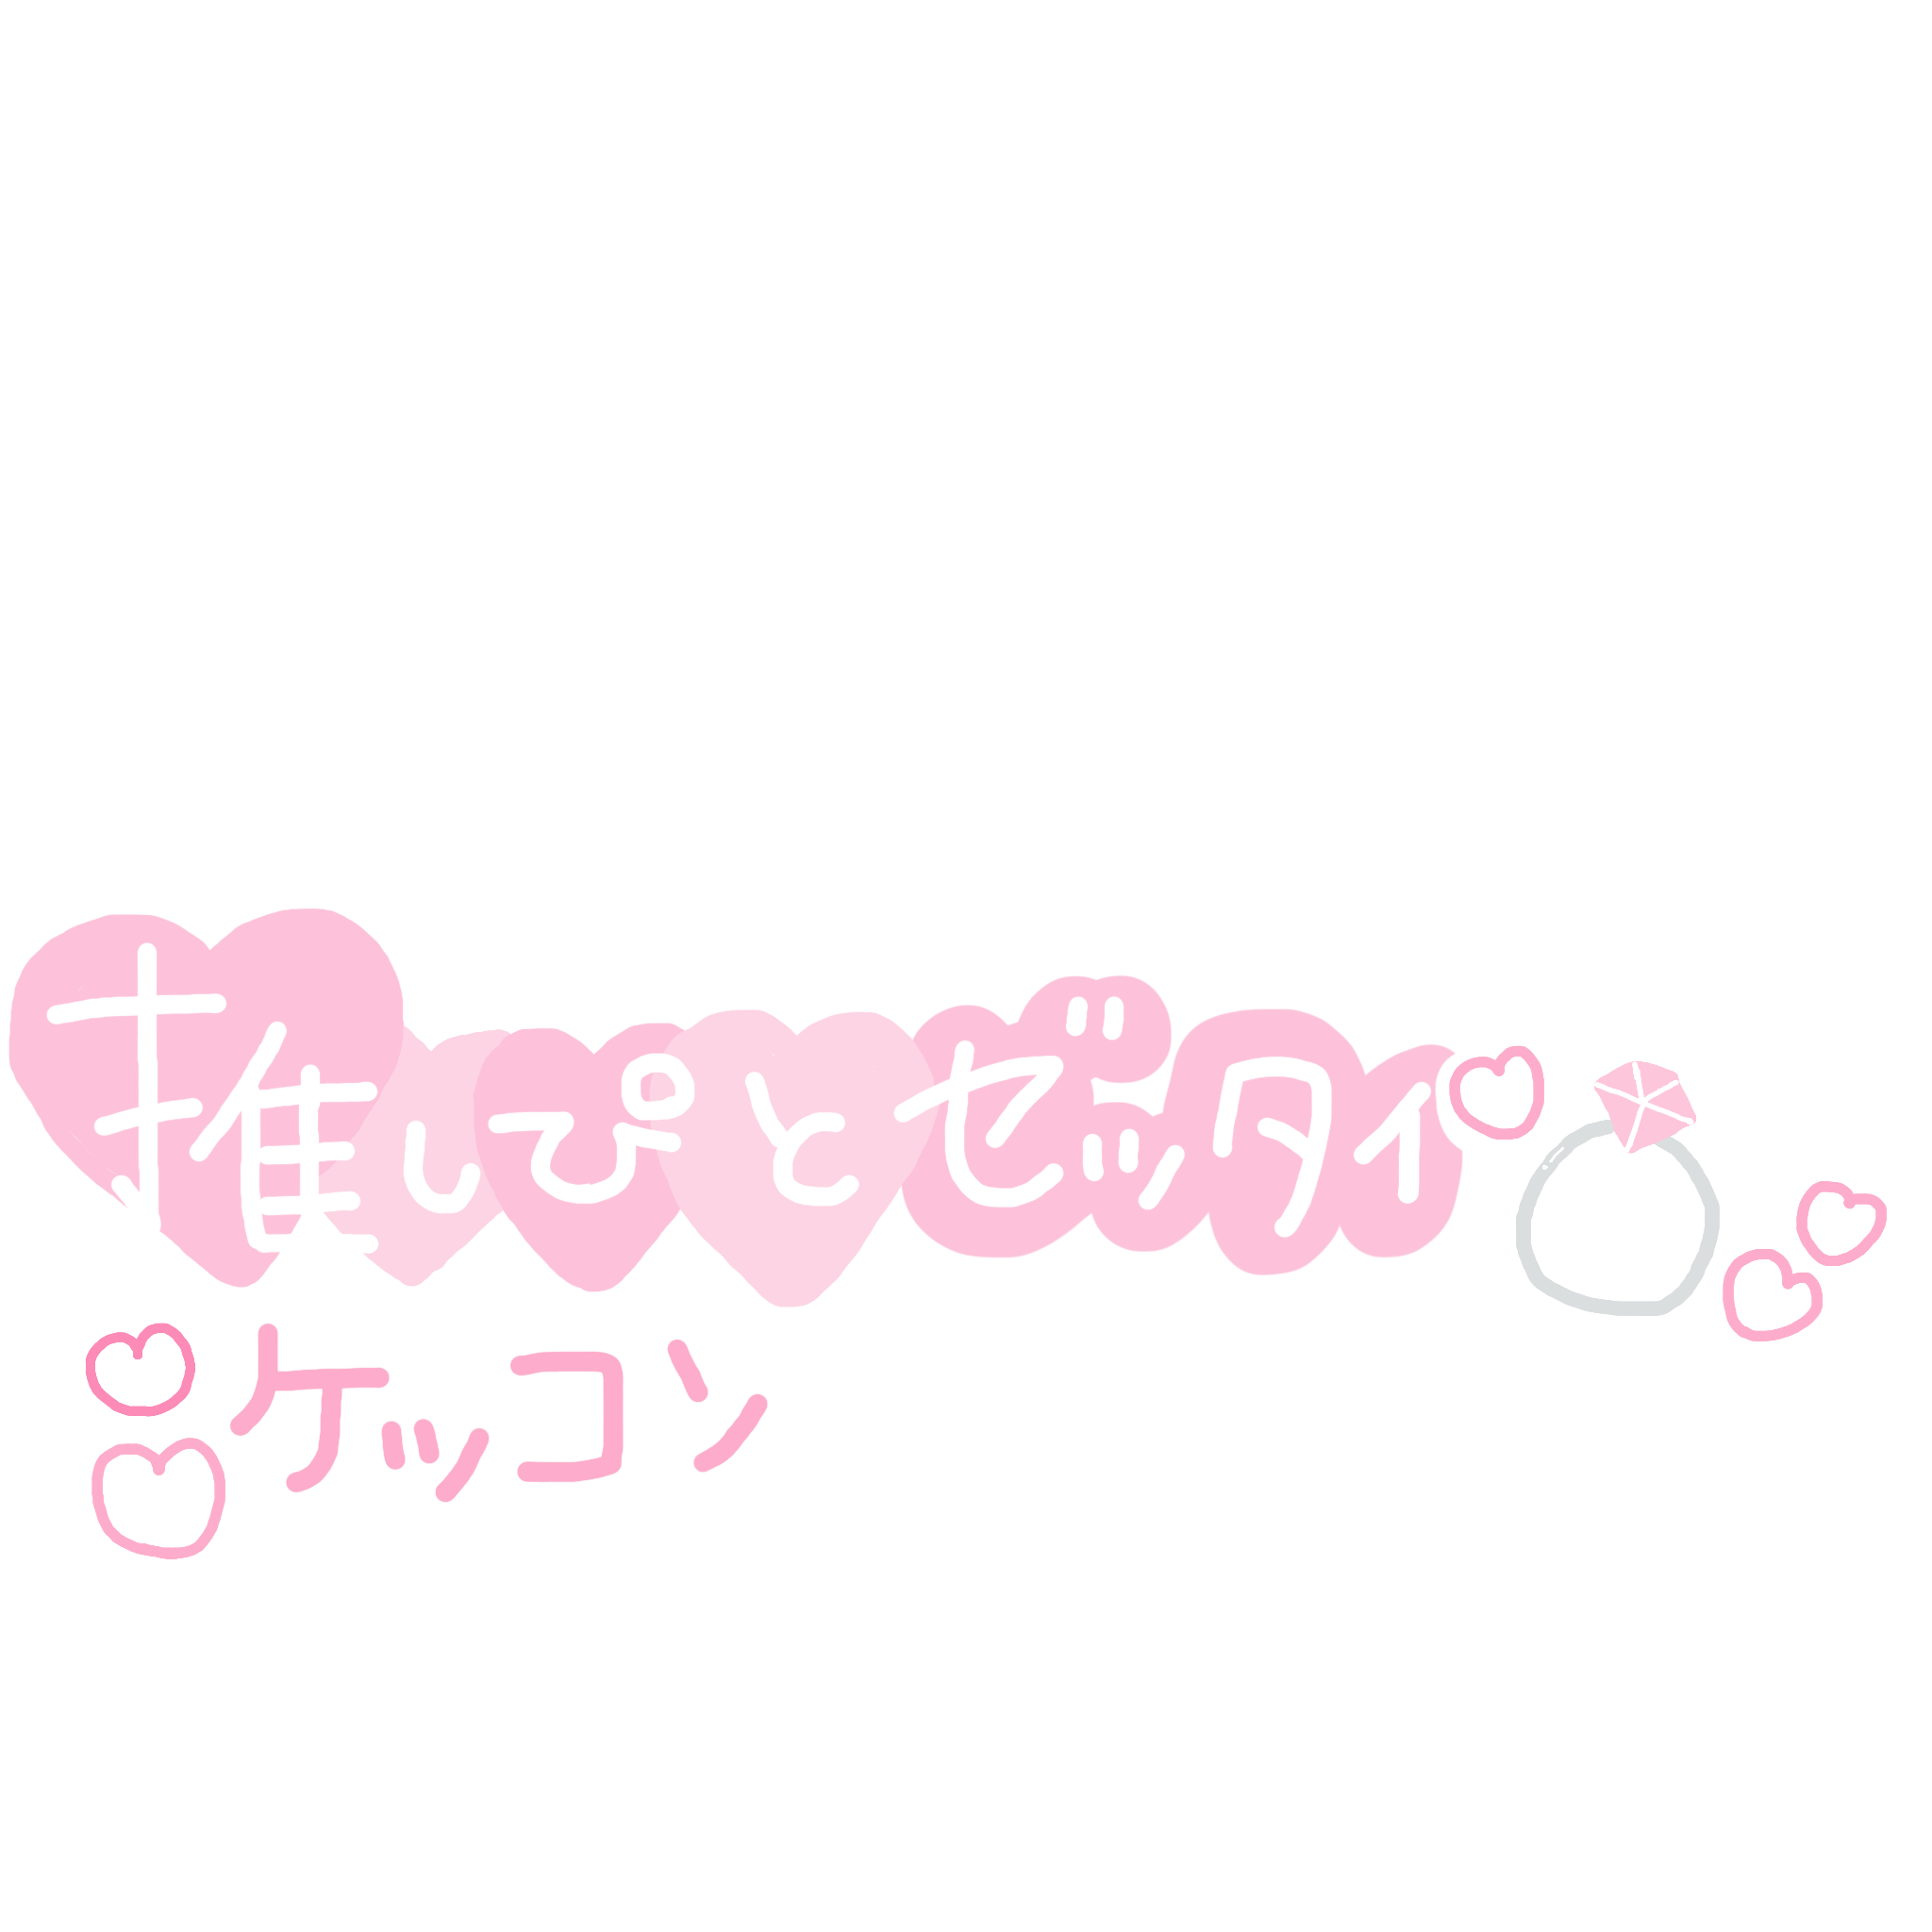 量産型 ジャニヲタ 文字 Sticker By Gcjvj